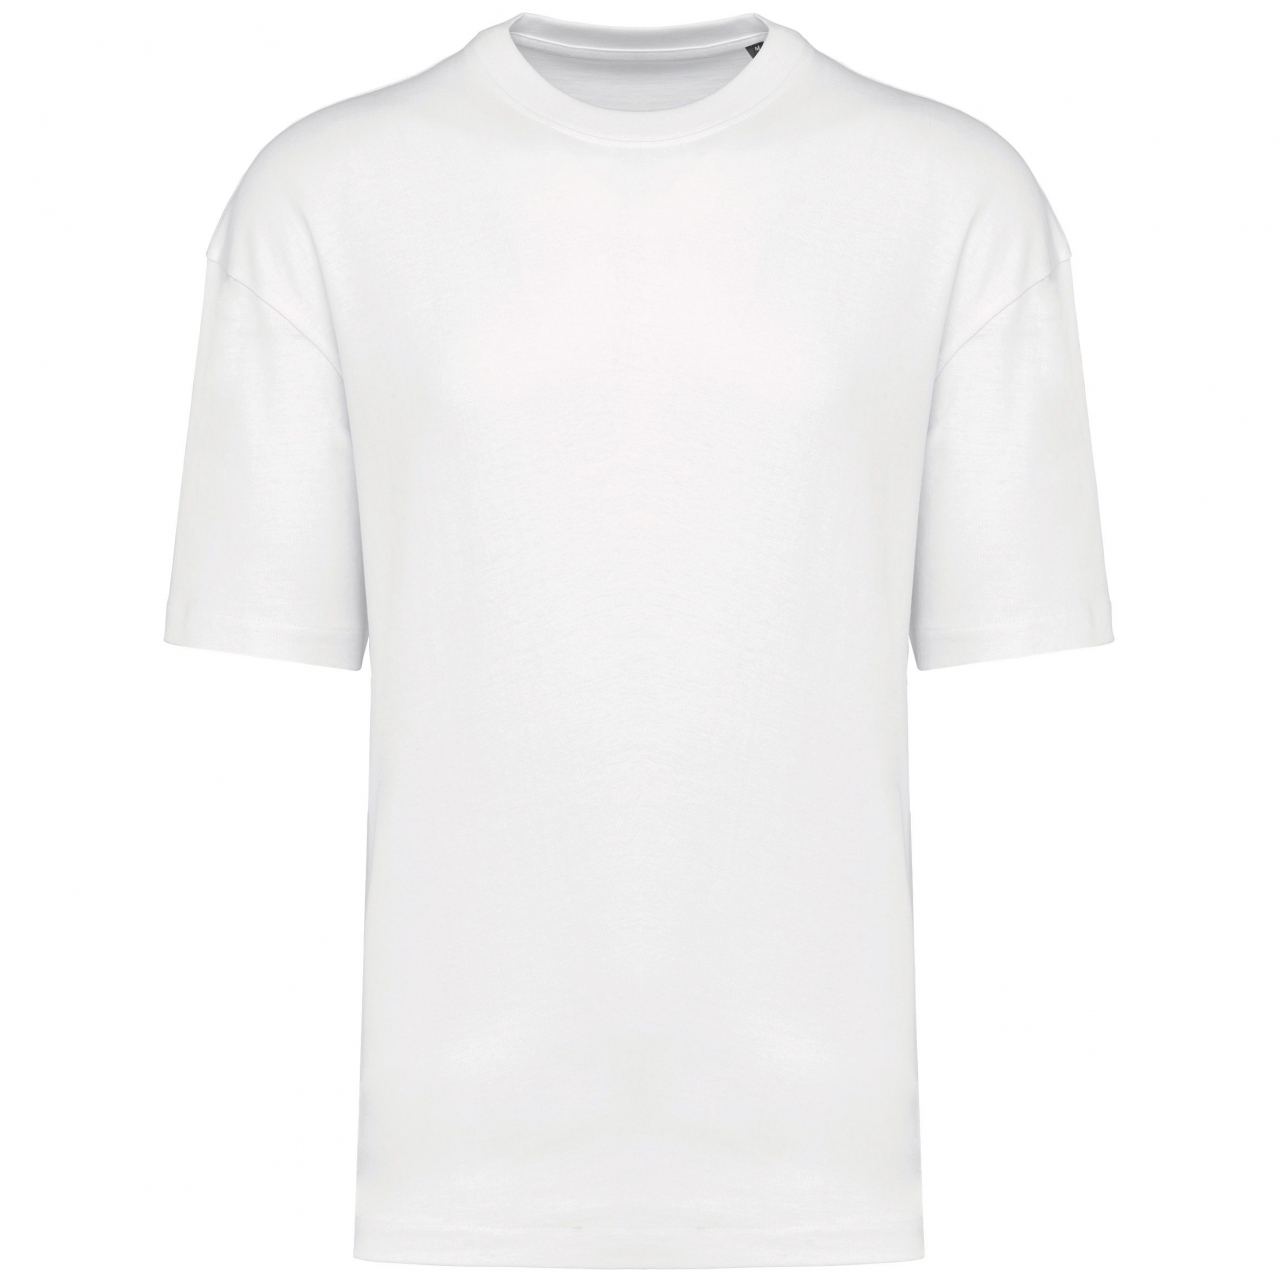 Pánské tričko Kariban Oversize - bílé, XL